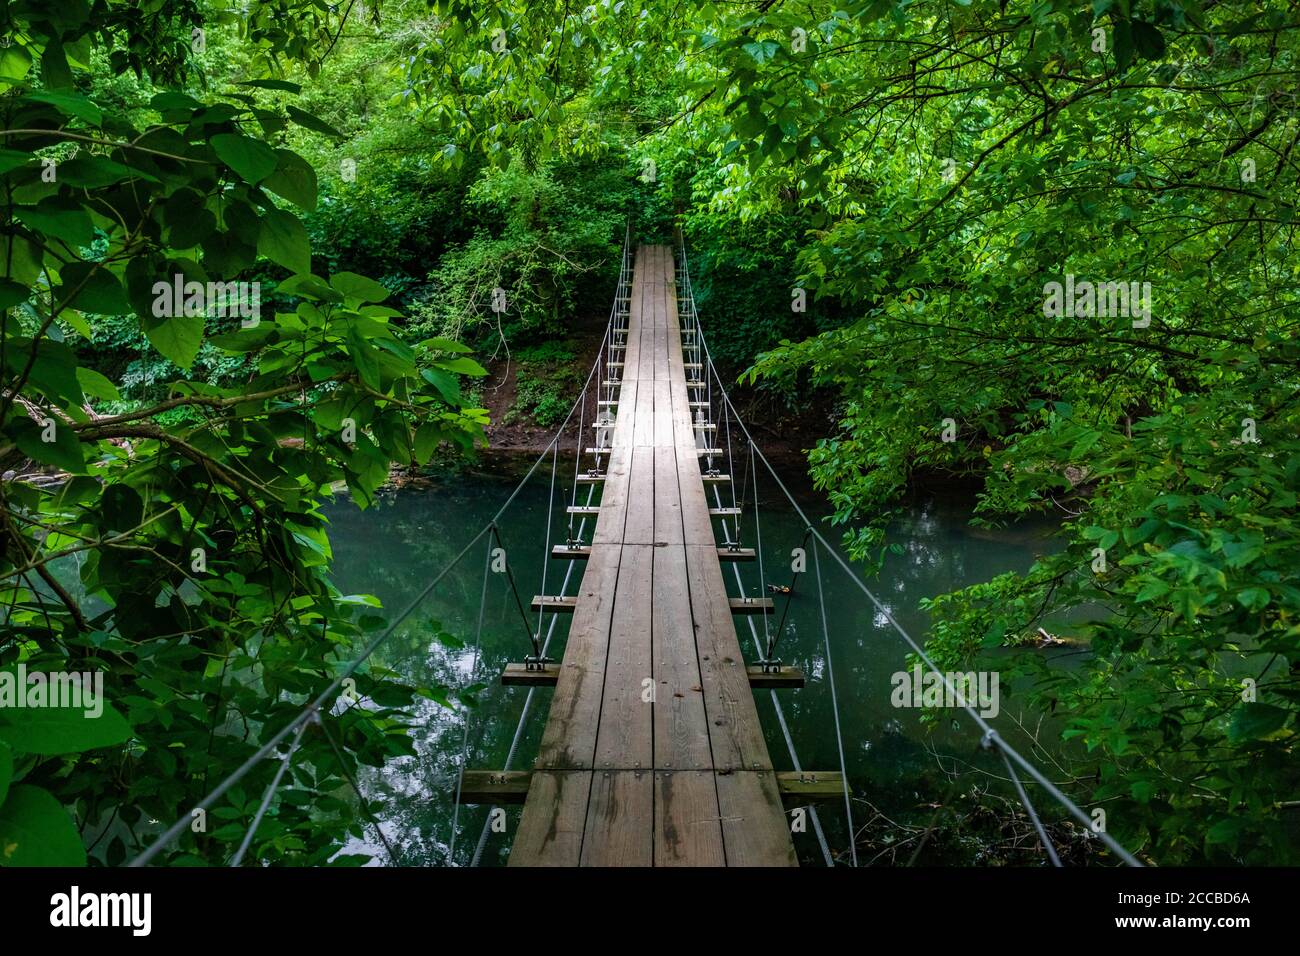 Pont suspendu vide pittoresque au milieu de la forêt personne autour d'un chemin vide Banque D'Images